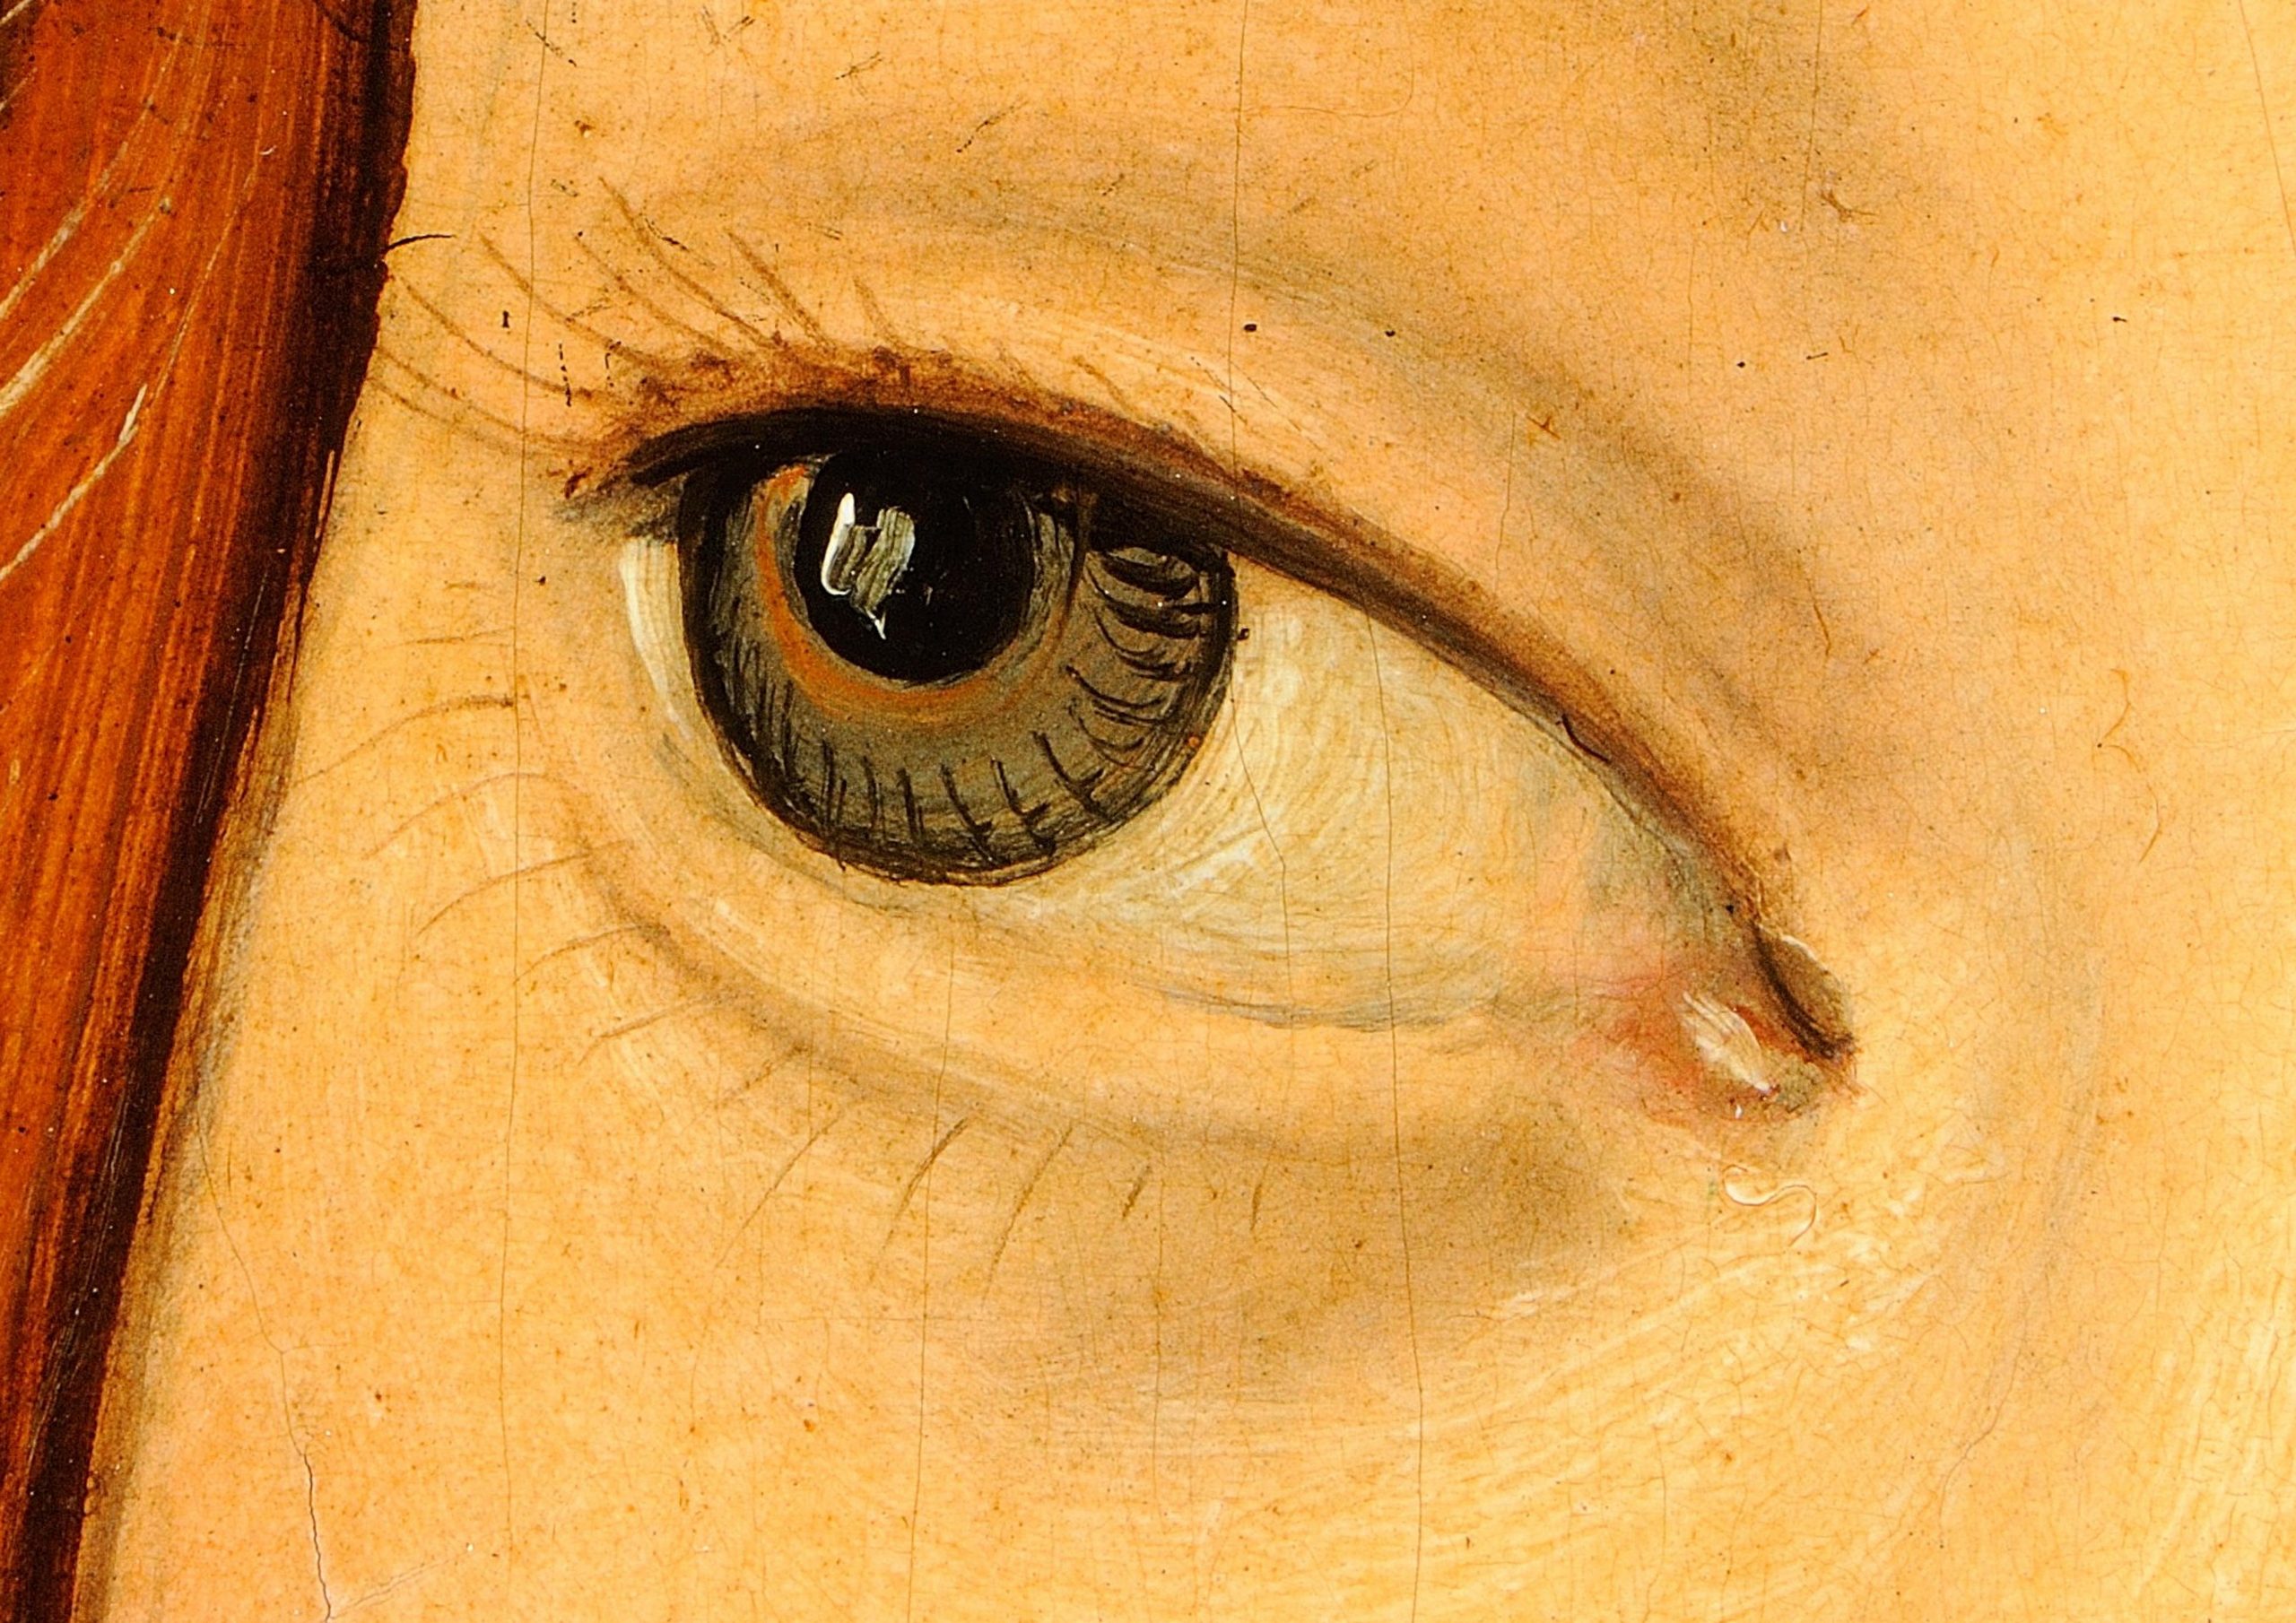 Detailausschnitt des rechten Auges von Eva, aus dem Gemälde "Eva" von Lucas Il Vecchio Cranach, gigapixel, haltadefinizione, gemälde, digital, kunstwerk